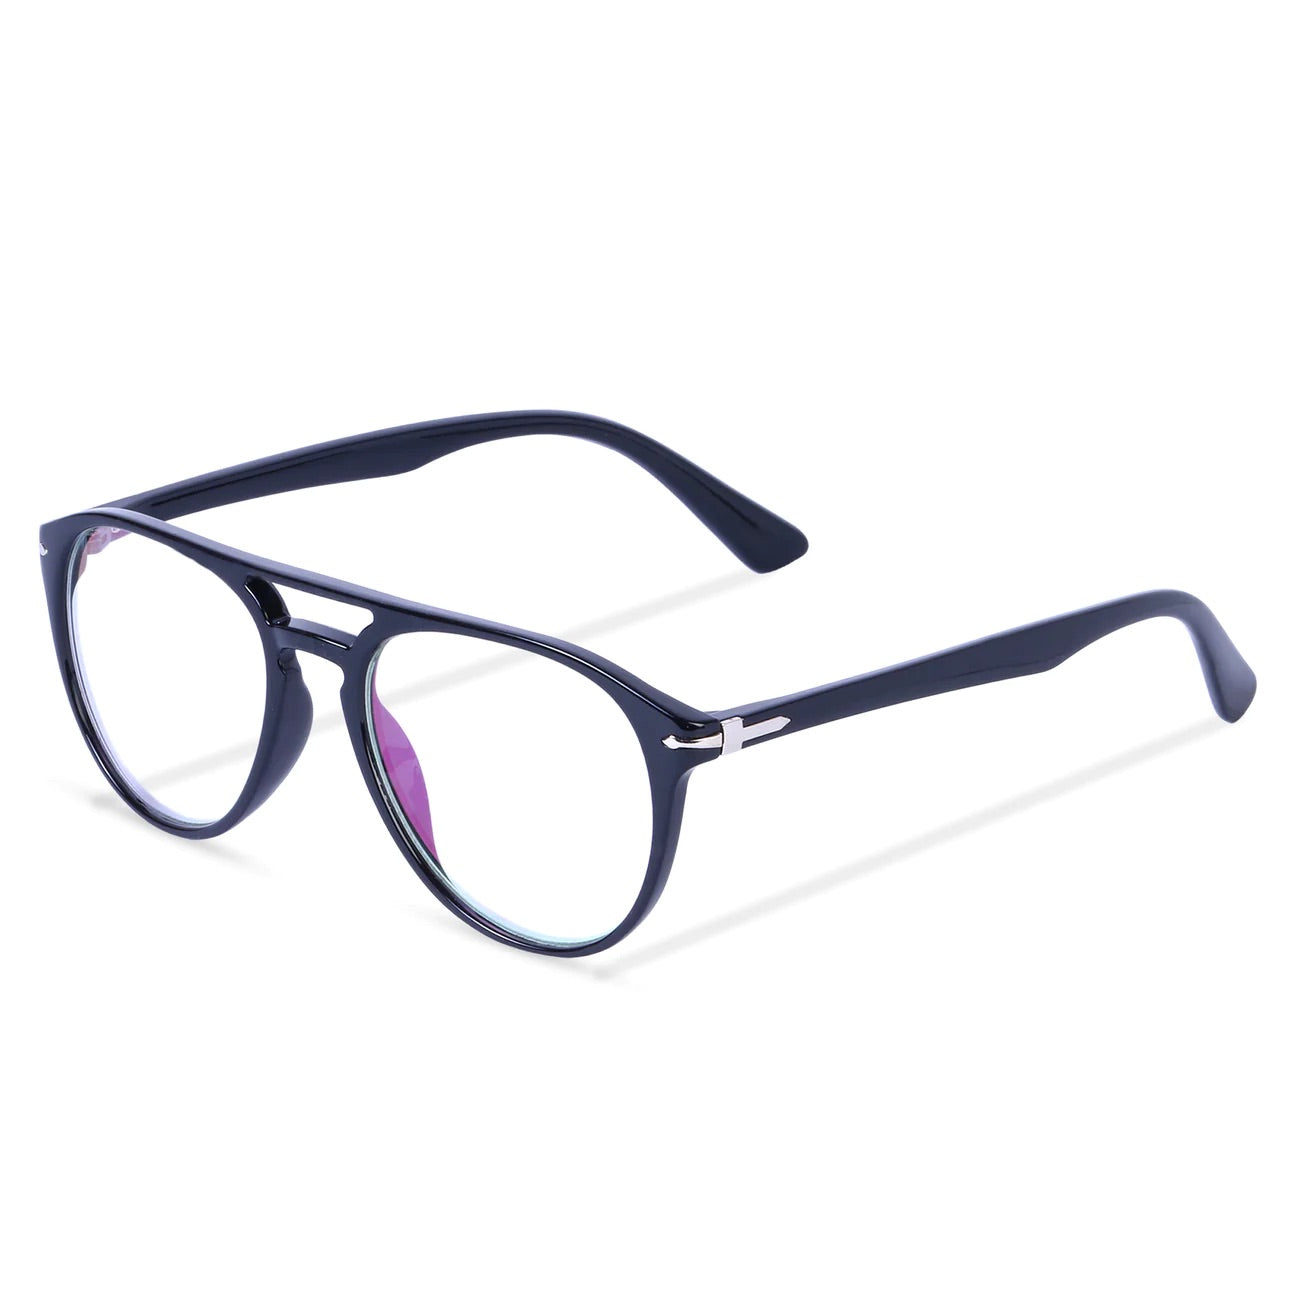 Jodykoes Premium Aviator Style Frame Eyeglasses (Black) - Jodykoes ®